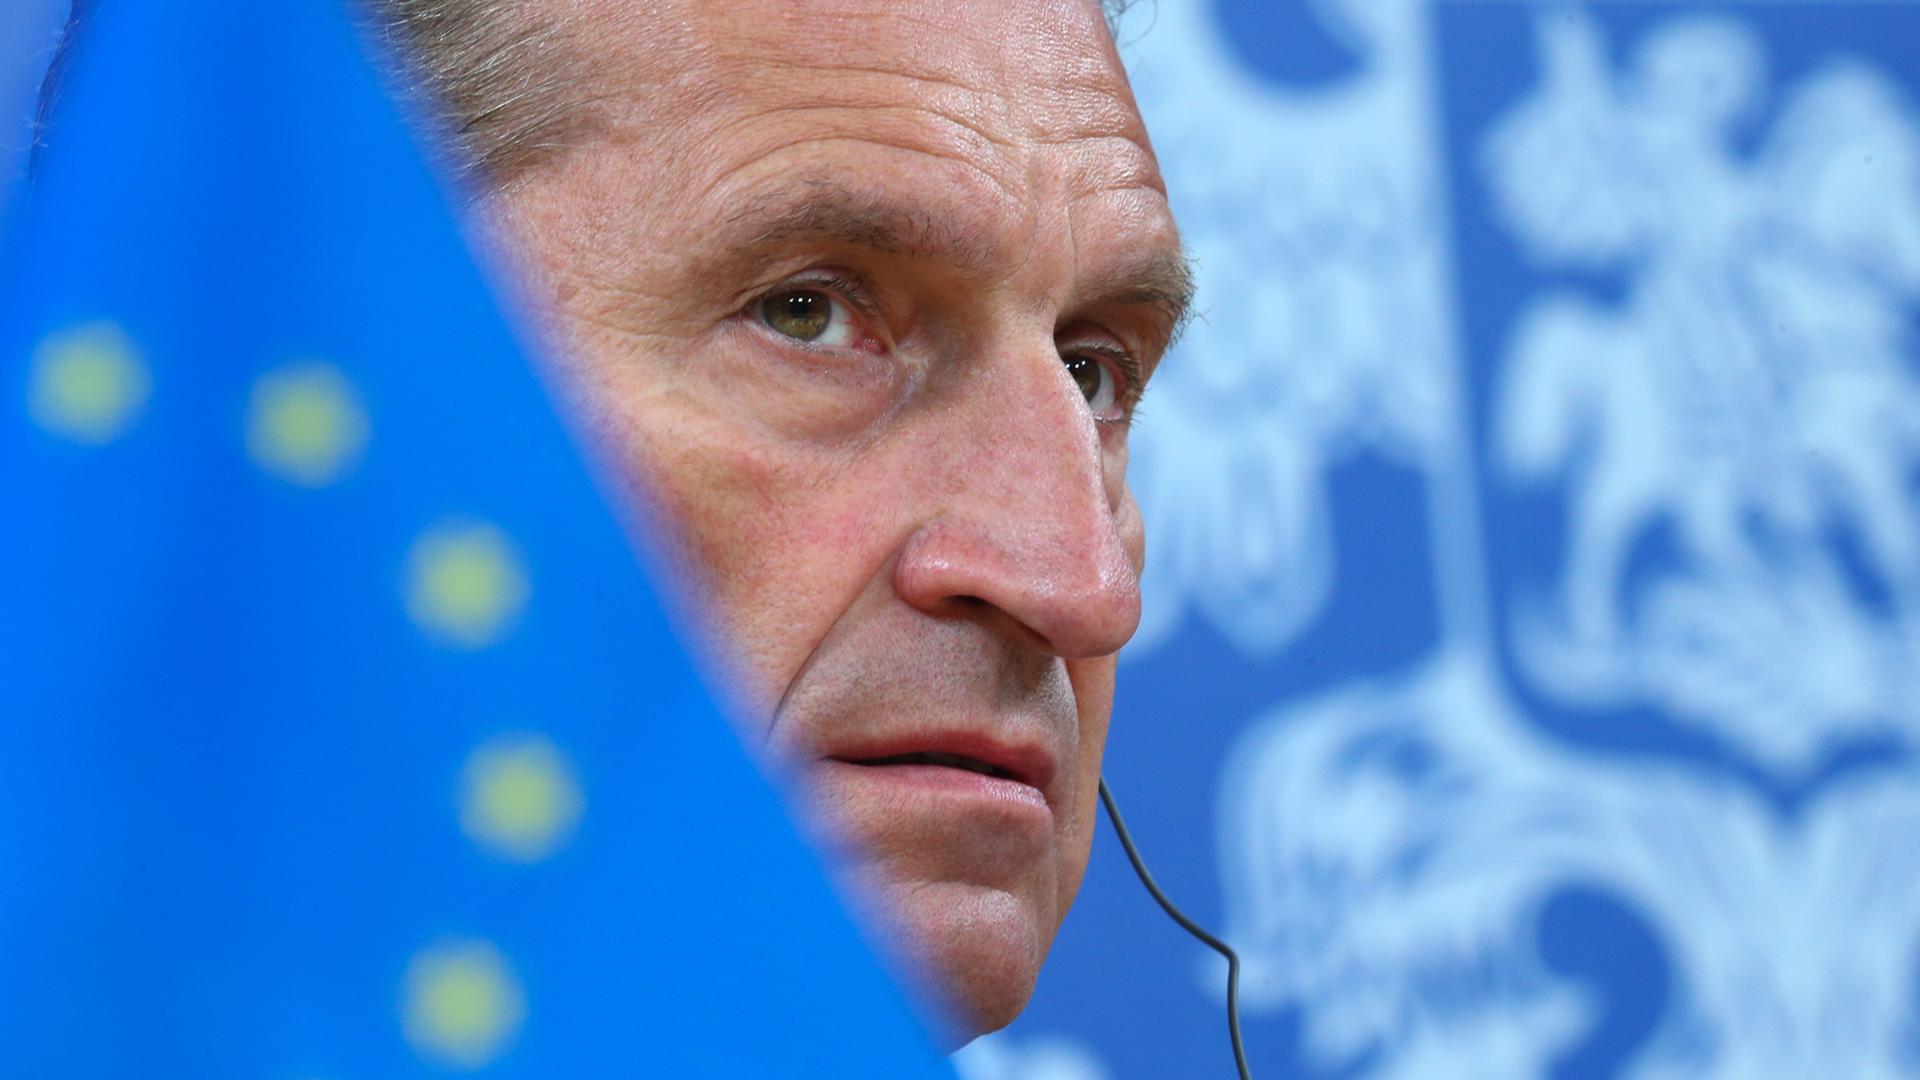 Günther Oettinger mit ernstem Blick. Sein Gesicht wird halb verdeckt von einer Europa-Flagge.